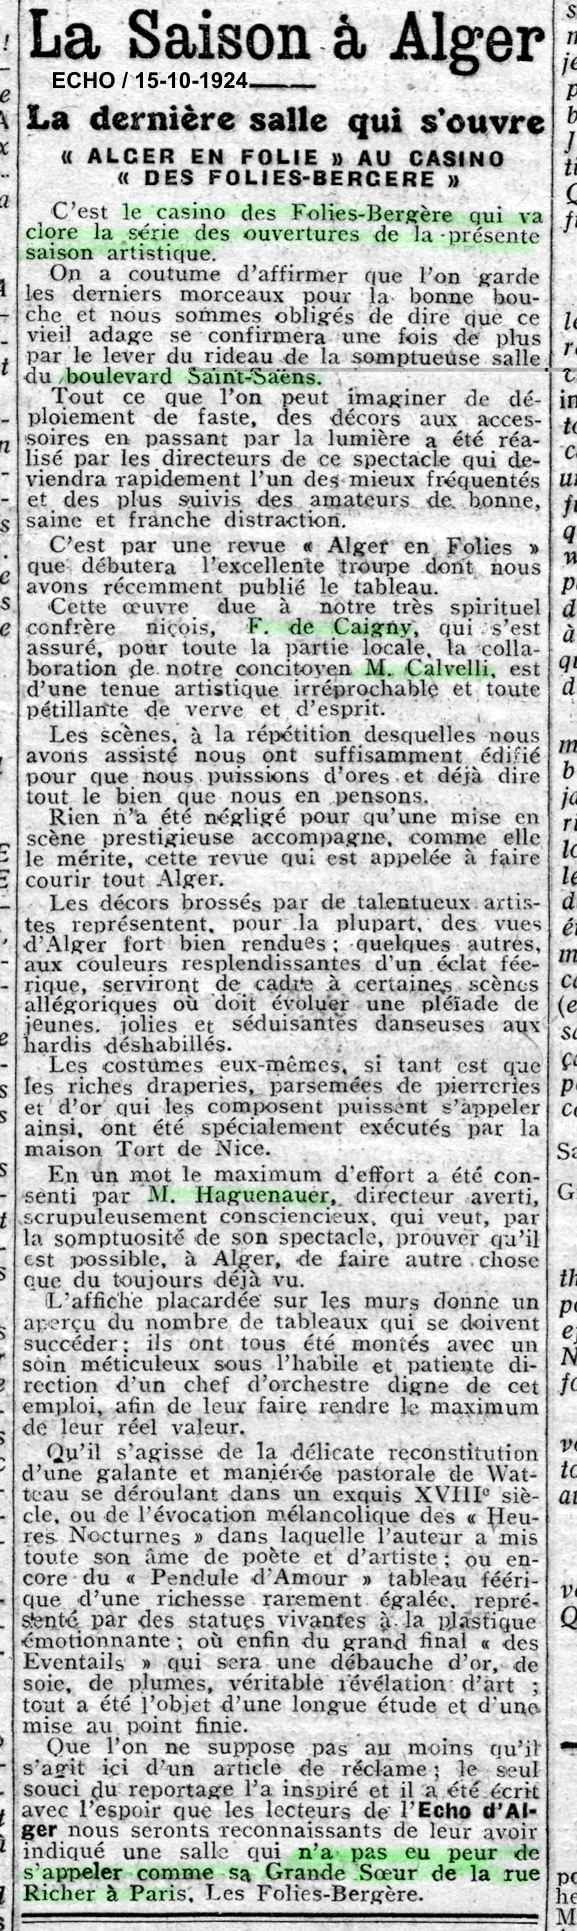 15-10-1924 : Alger en folies au casino des Folies Bergère